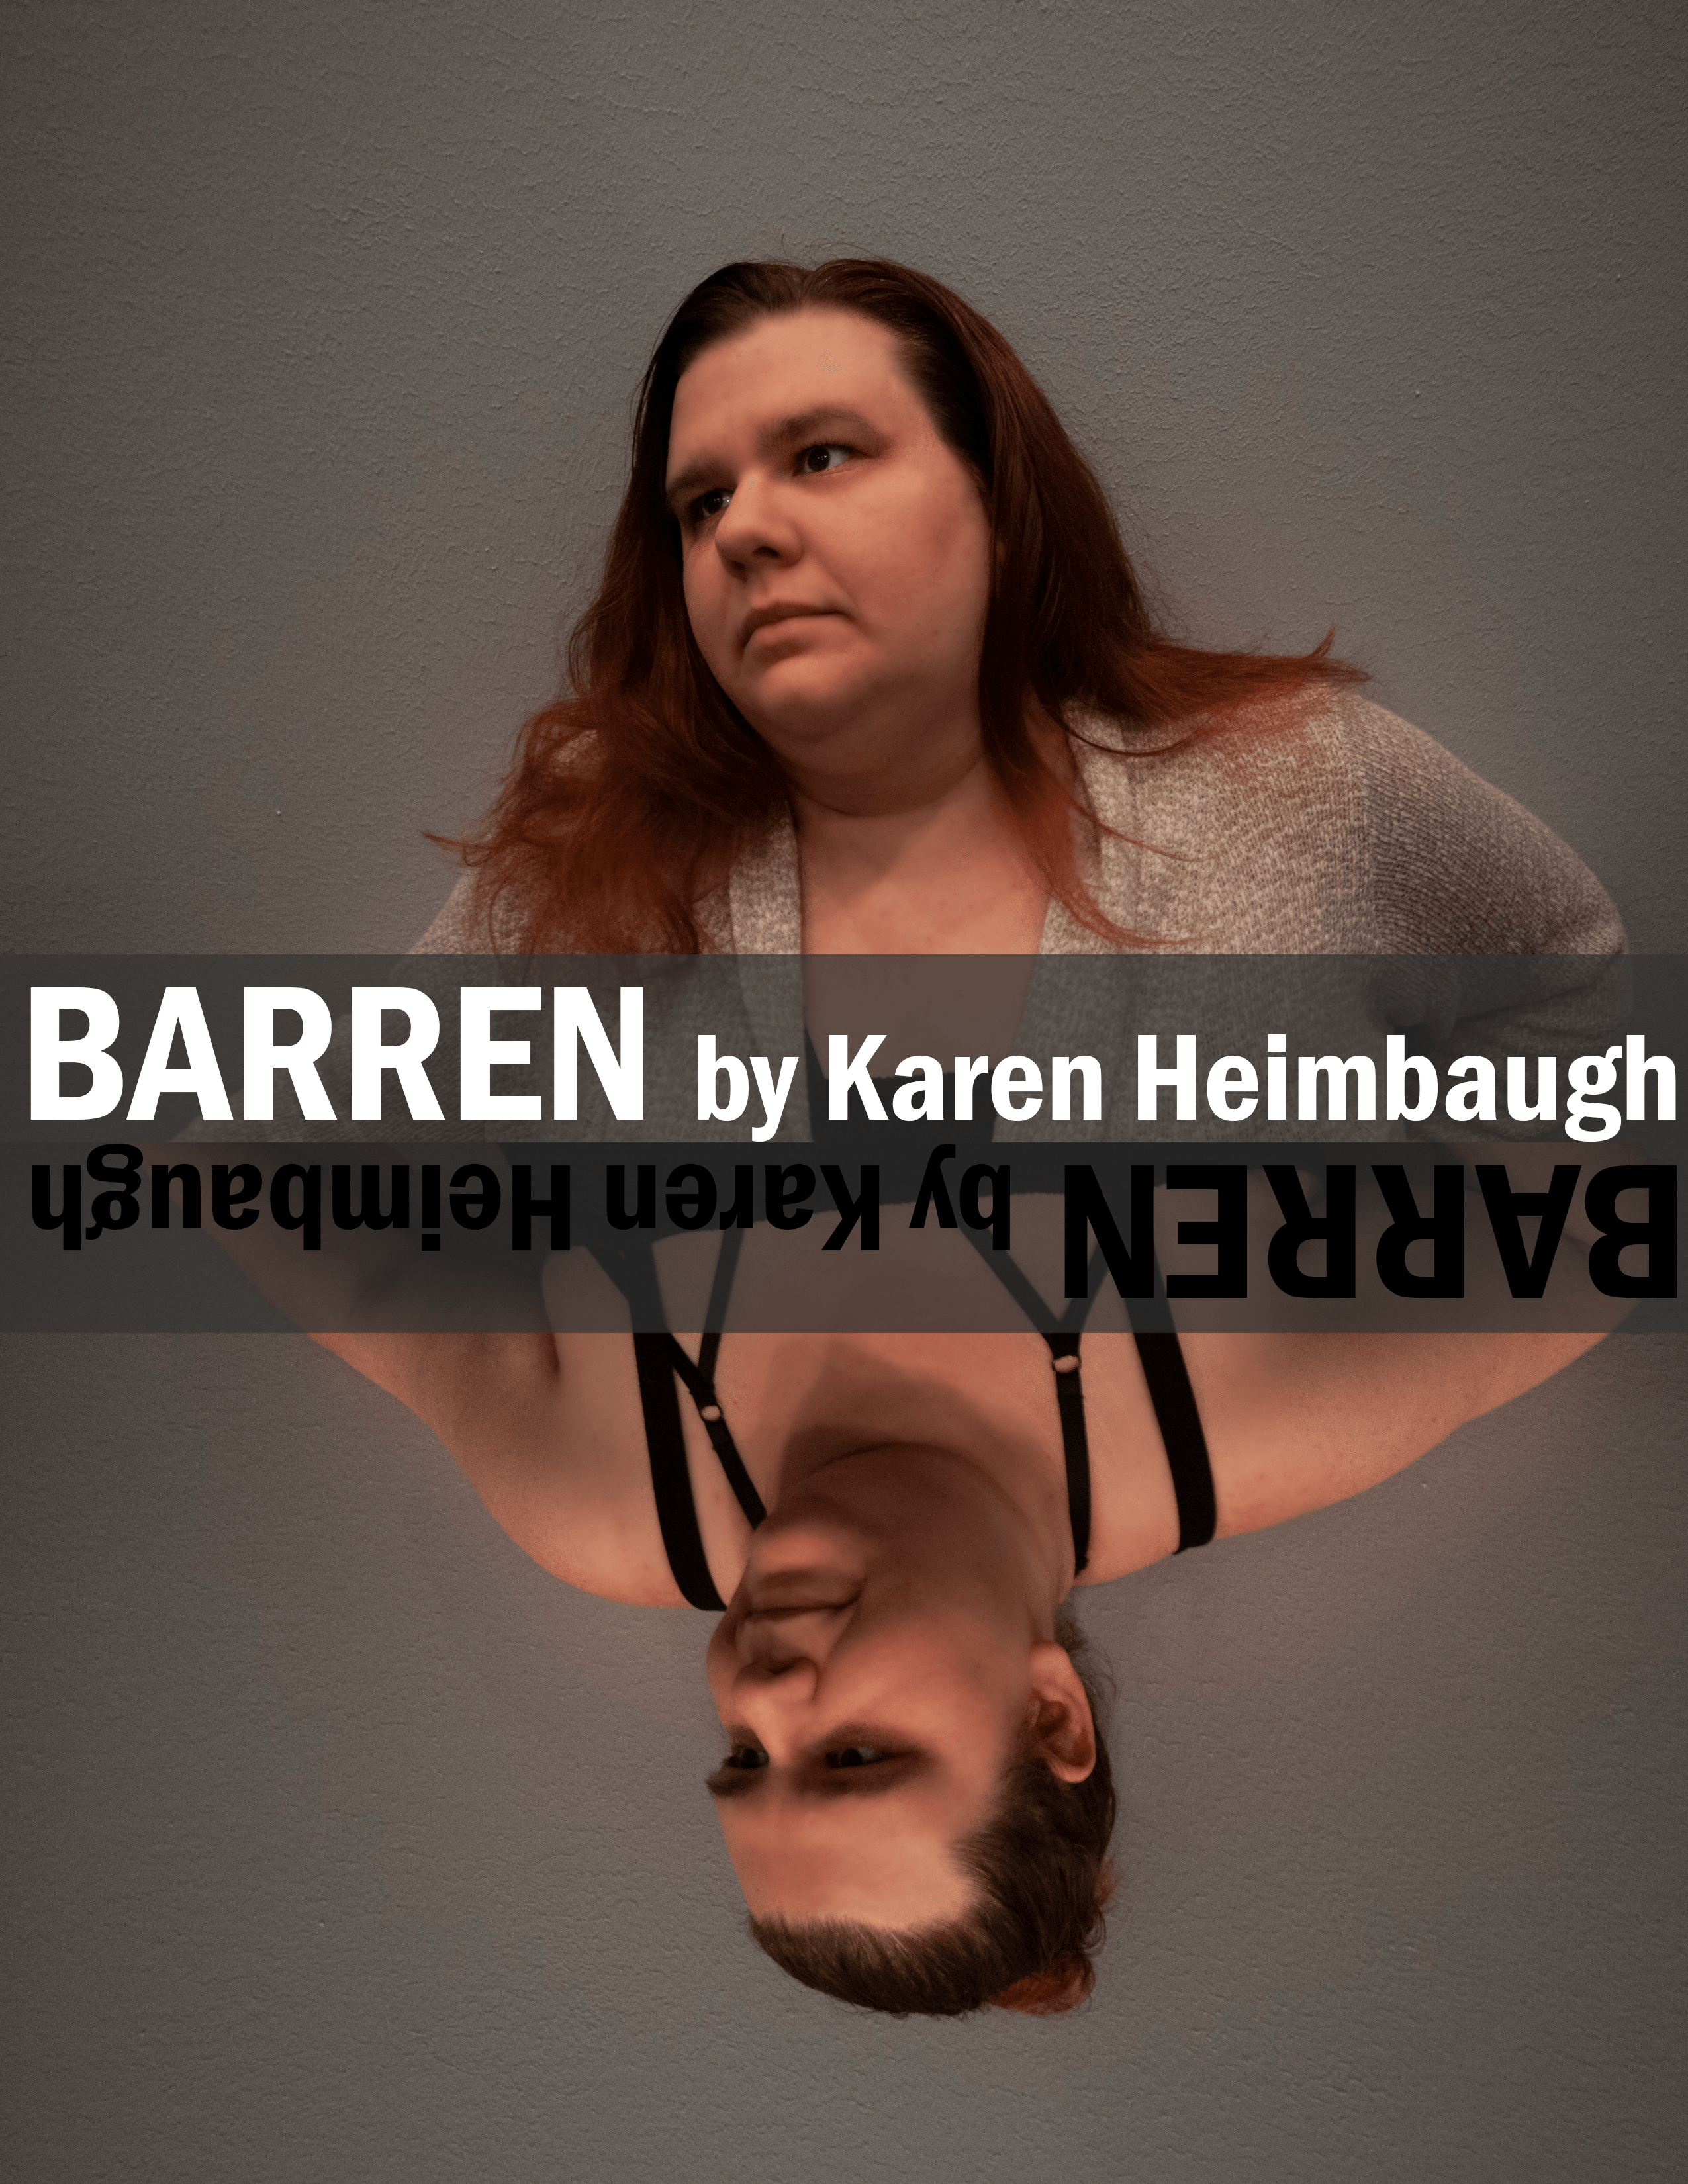 Barren by Karen heimbaugh